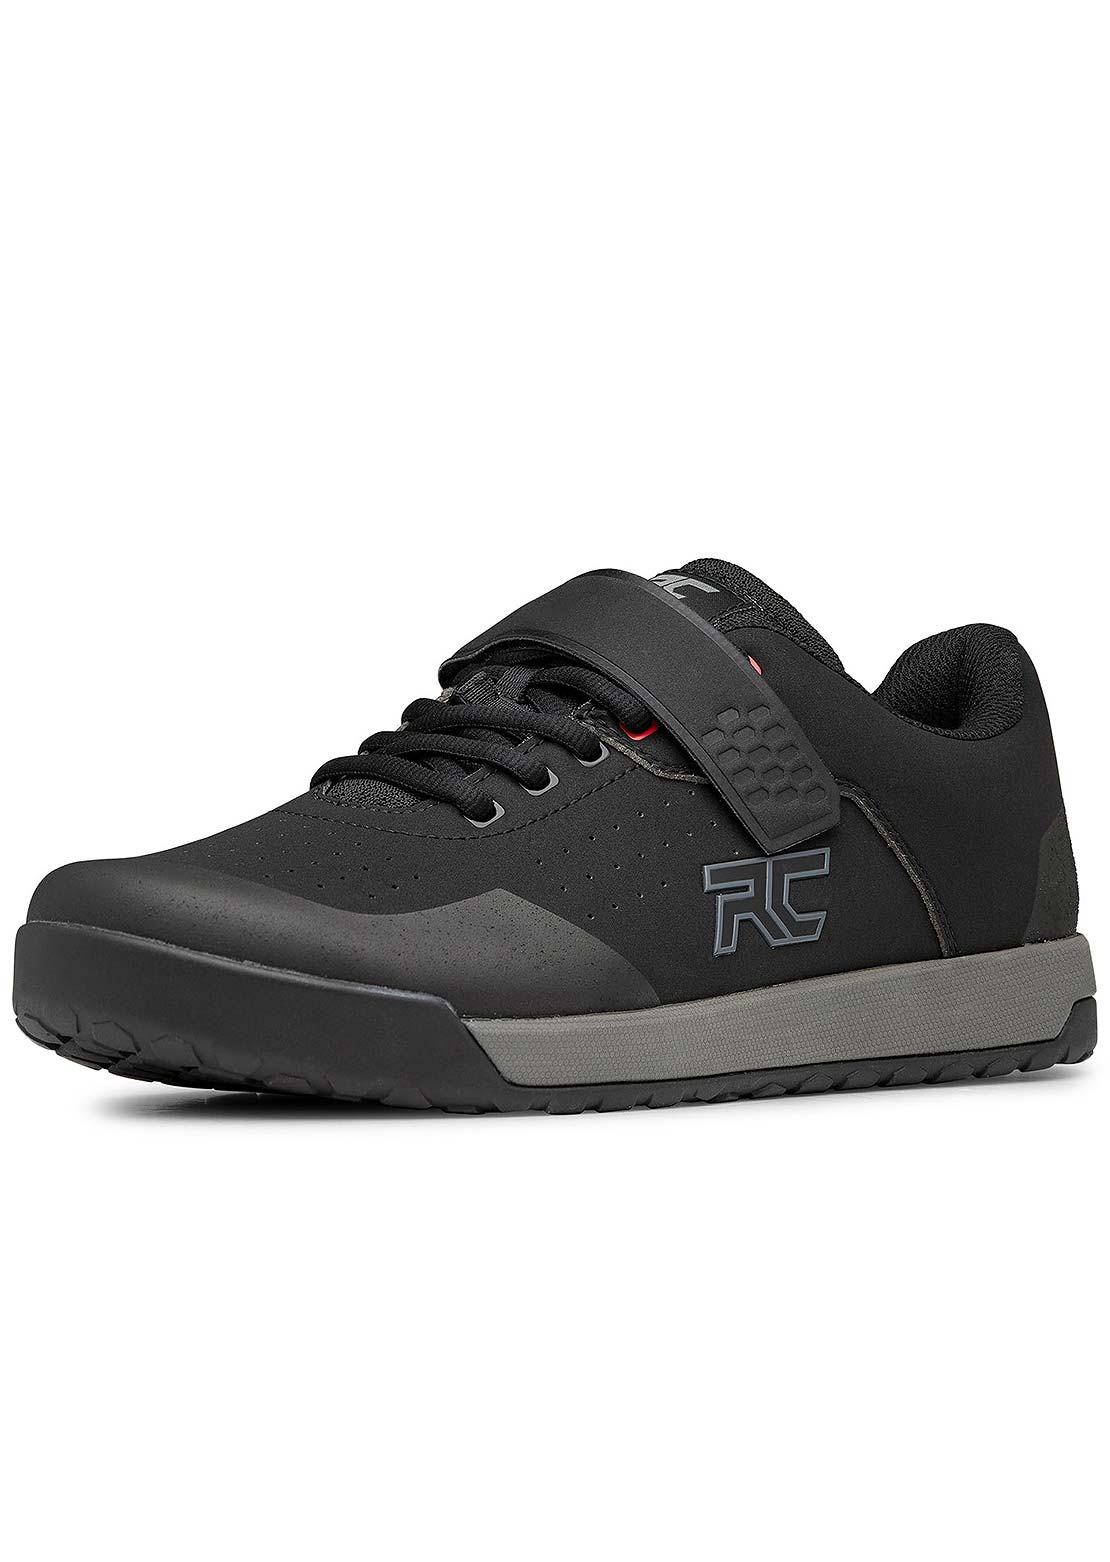 Ride Concepts Men&#39;s Hellion Clip Trail Shoes Black/Charcoal